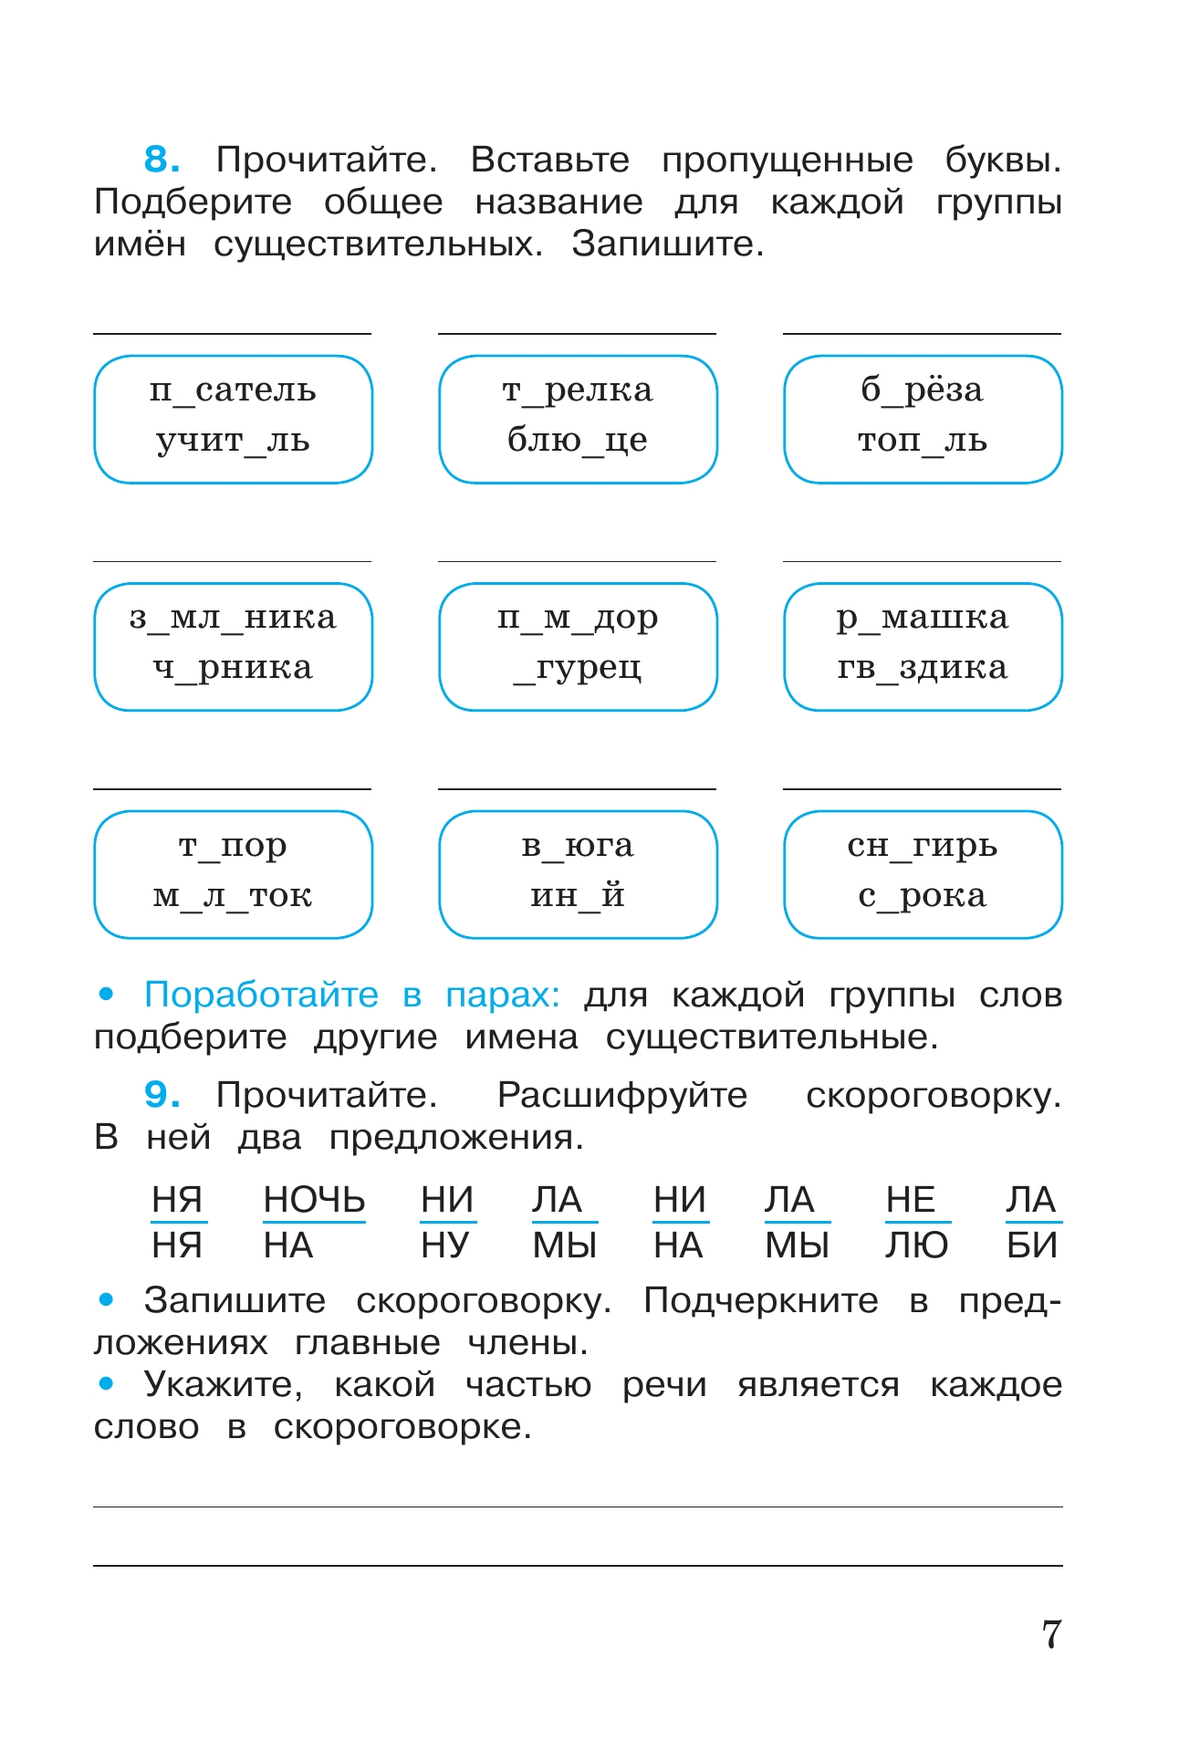 Русский язык. Рабочая тетрадь. 3 класс. В 2 частях. Часть 2 10